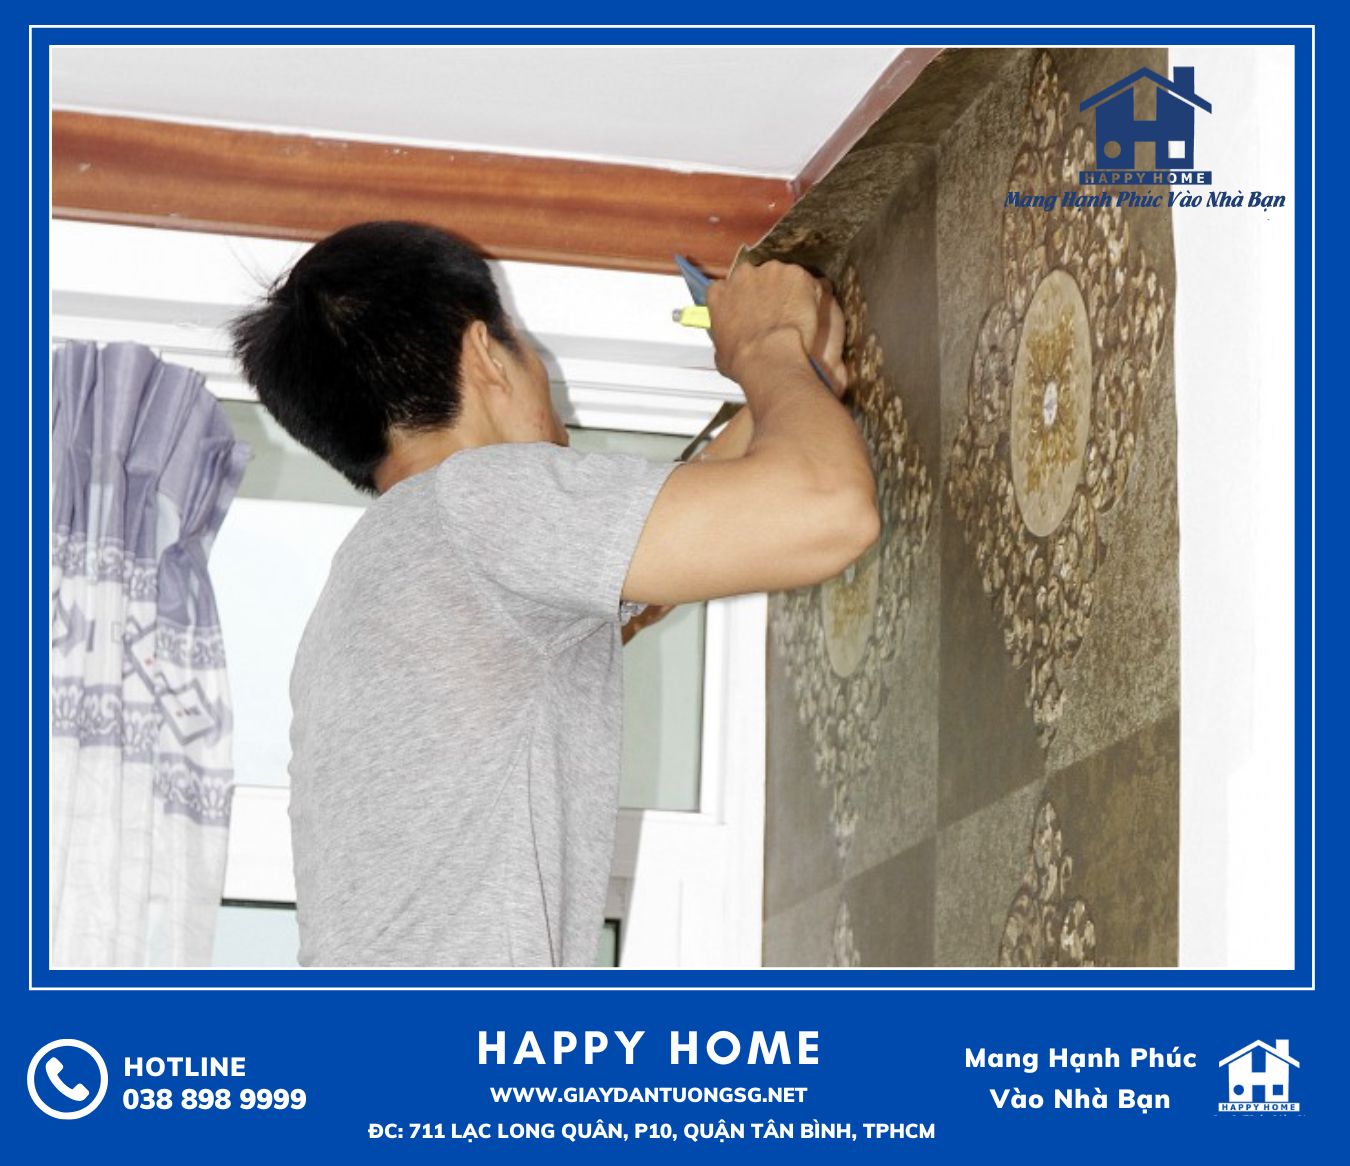 Happy Home là đơn vị uy tín chuyên cung cấp và thi công giấy dán tường hiện nay